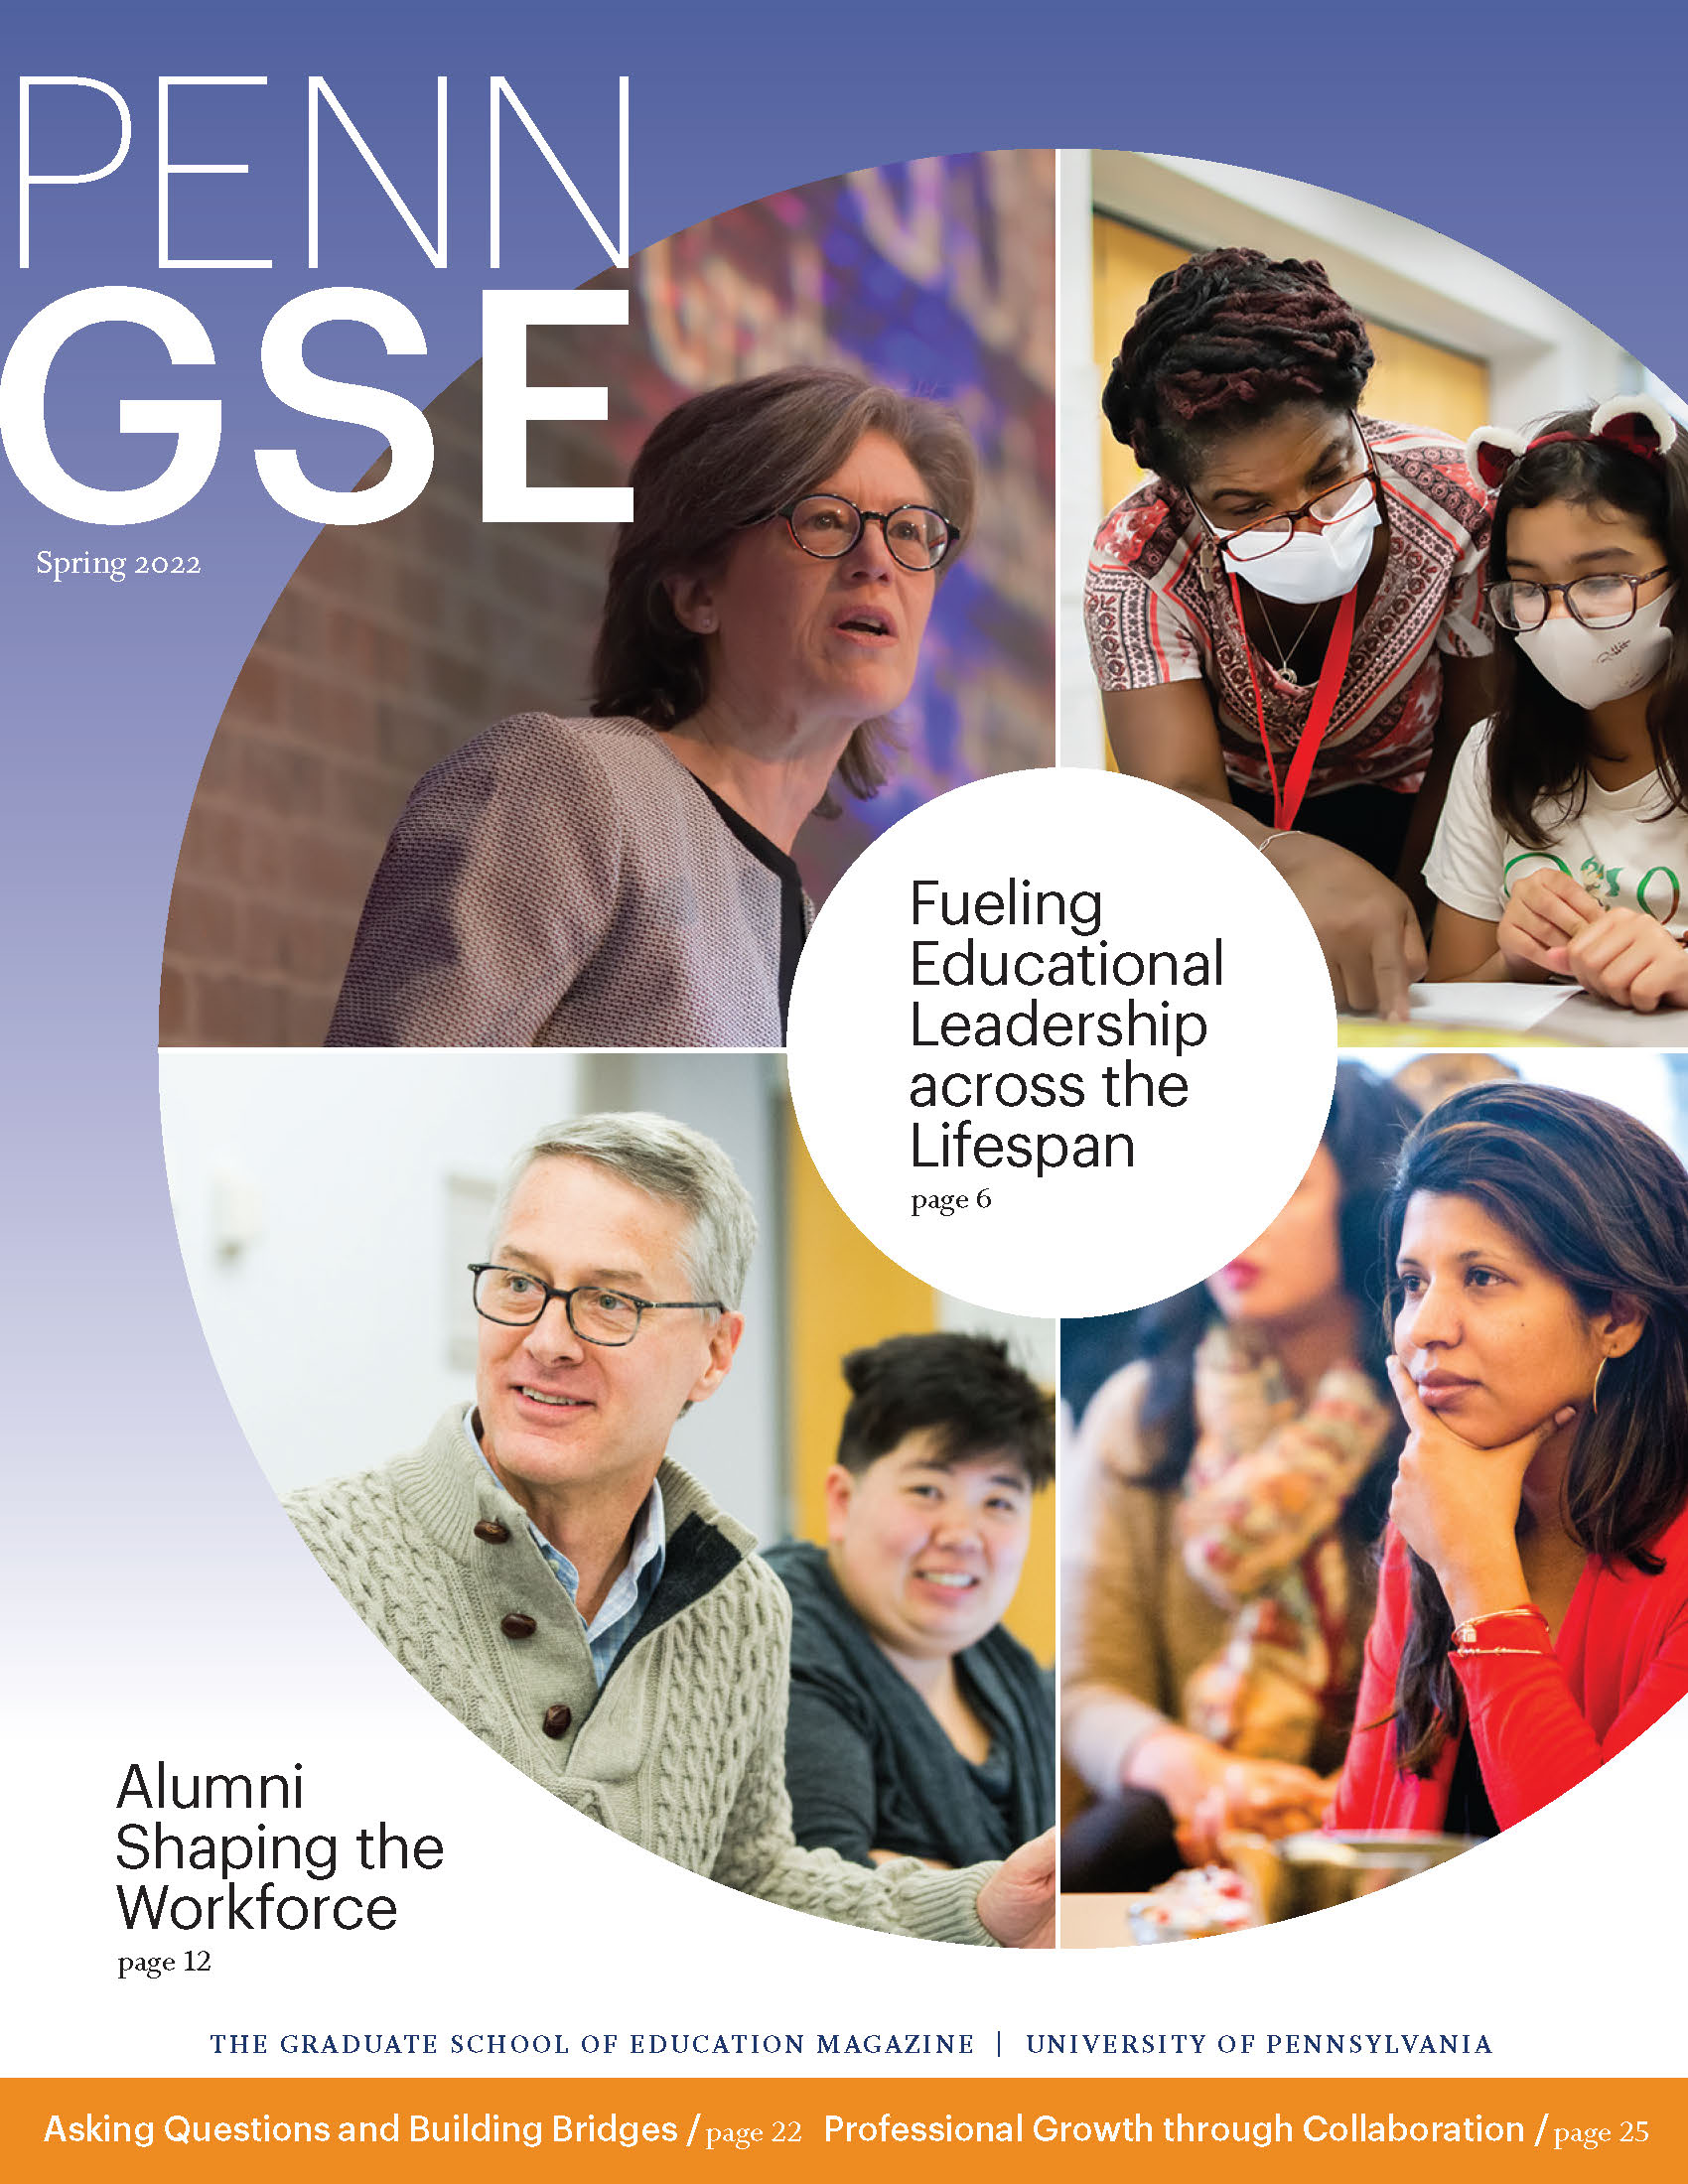 Penn GSE Magazine Cover Spring 2022